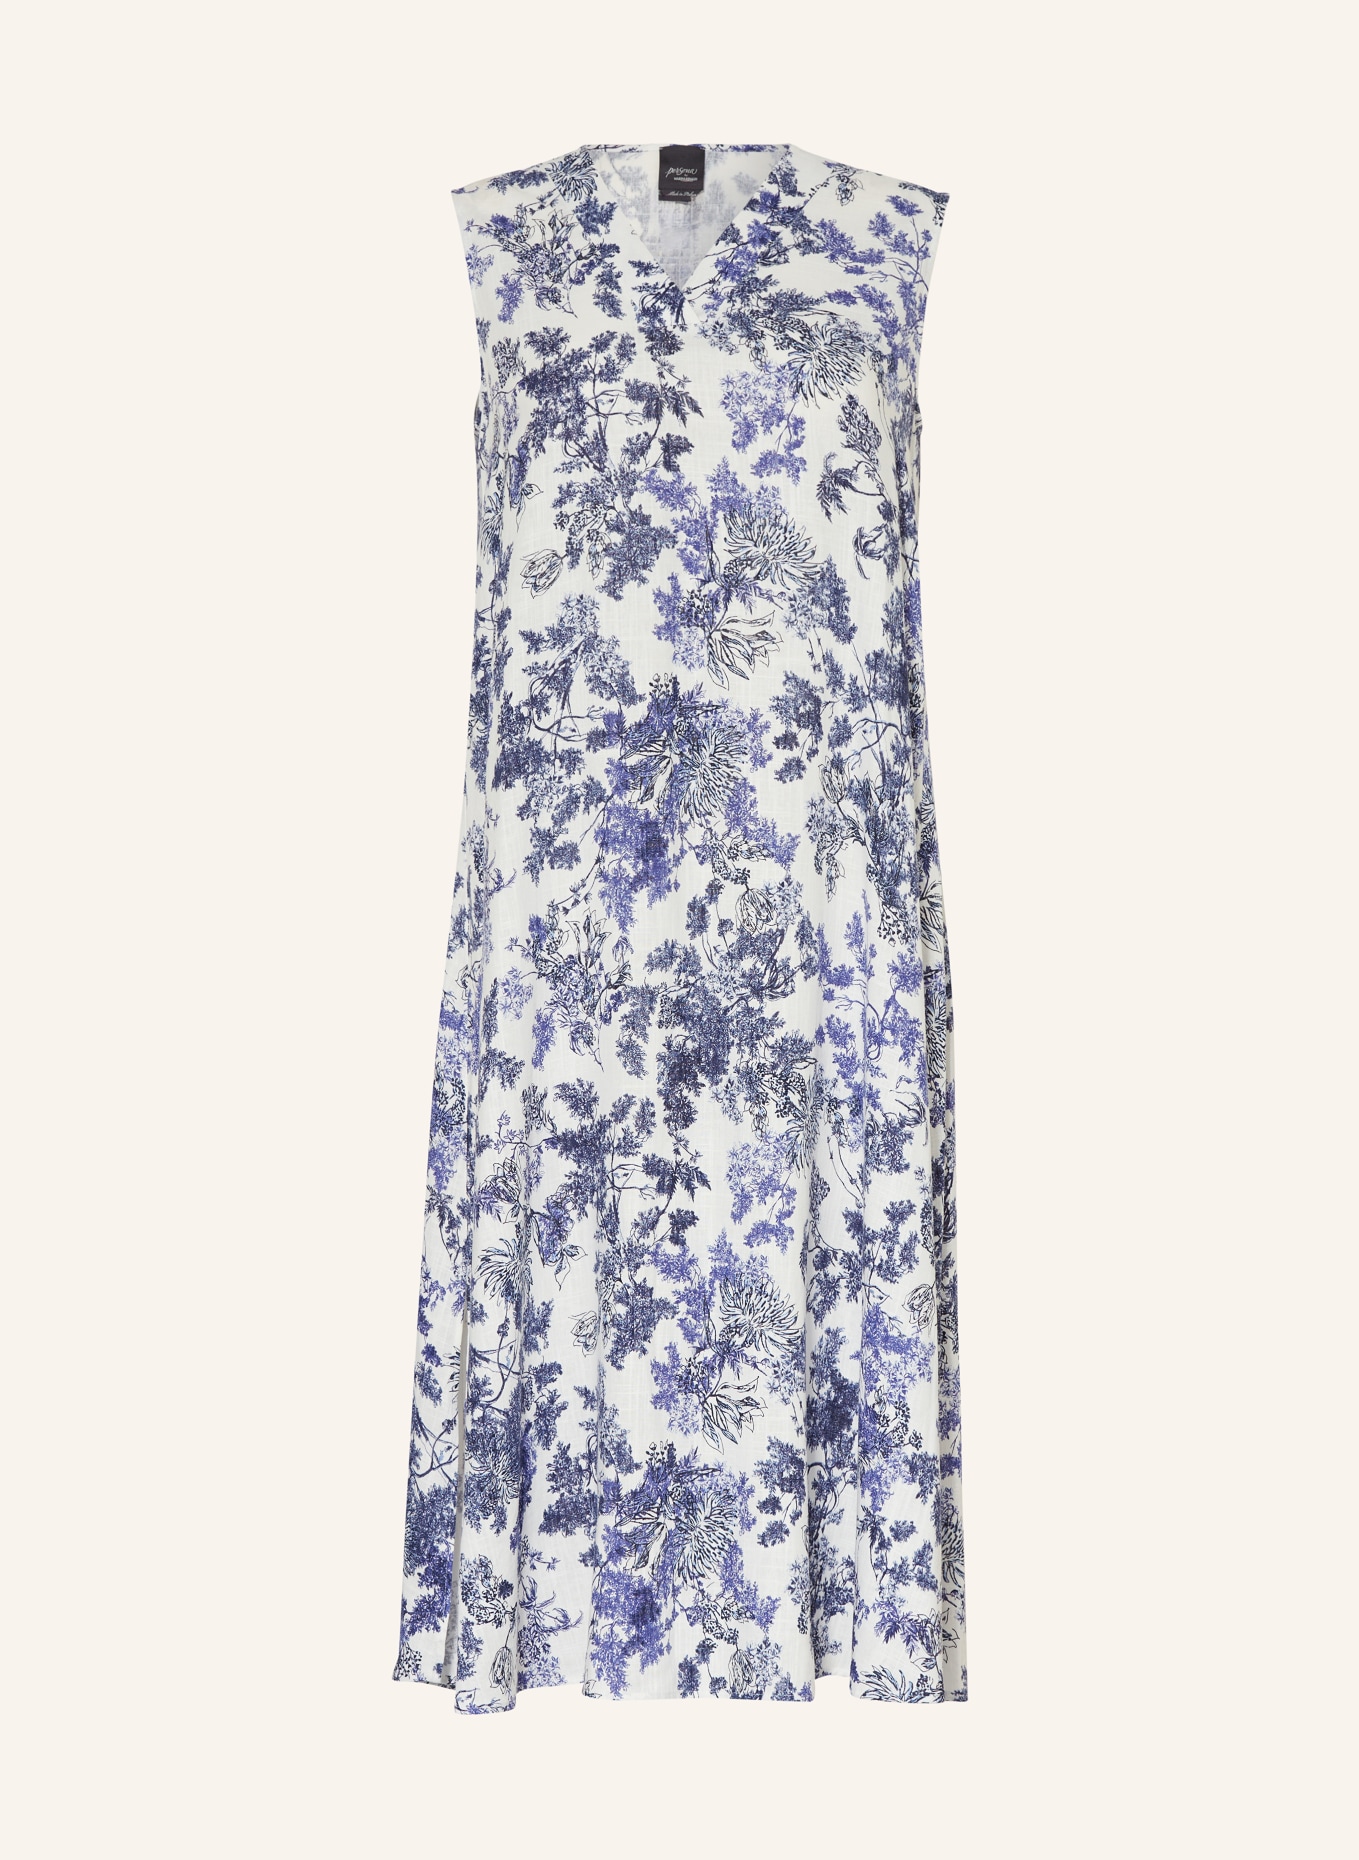 MARINA RINALDI PERSONA Dress, Color: WHITE/ DARK BLUE (Image 1)